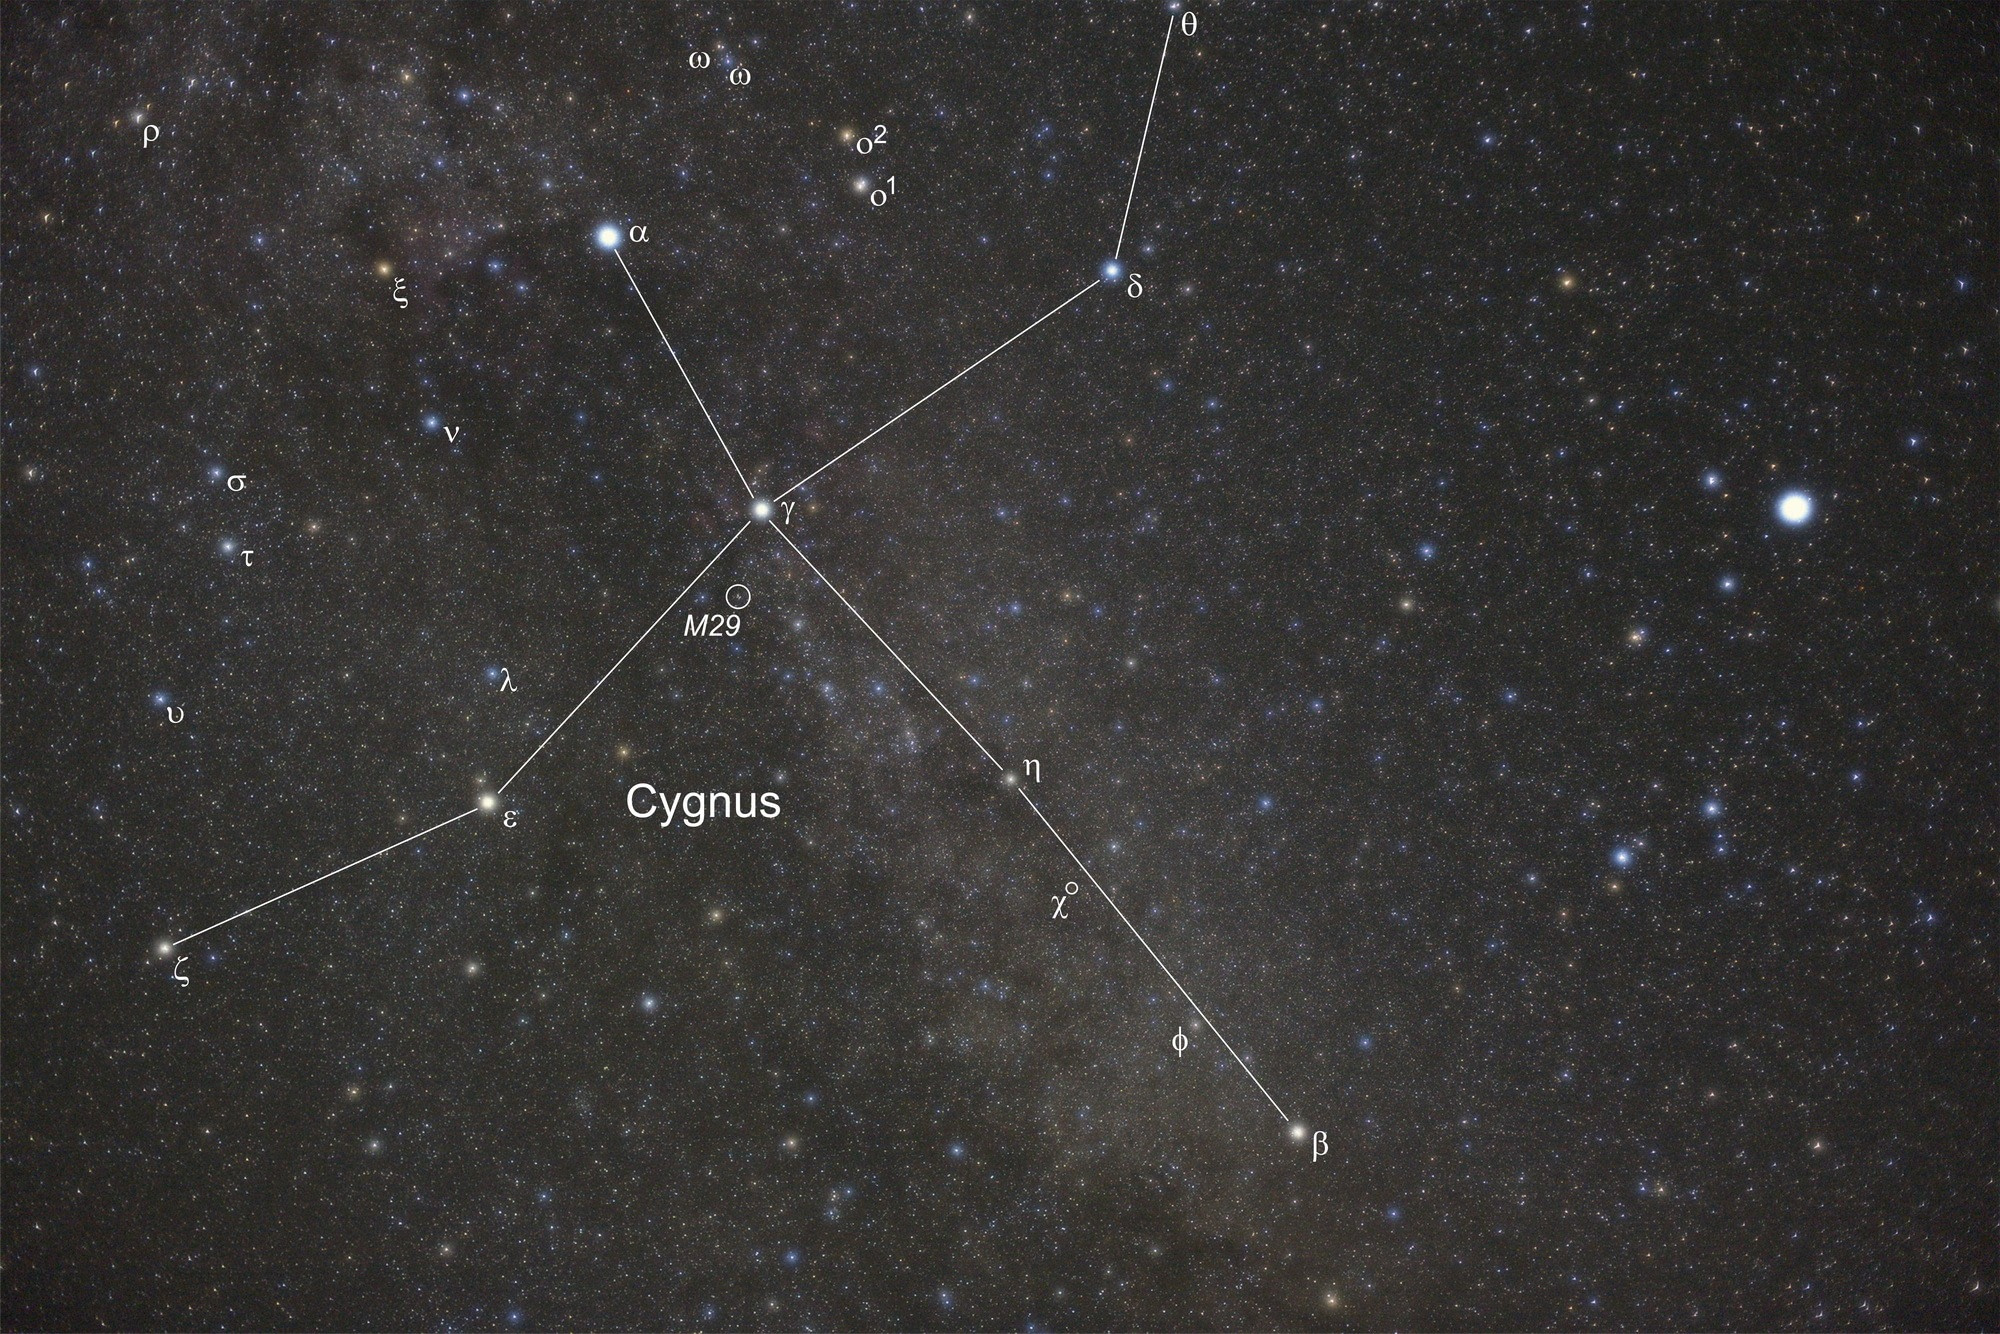 Der offene Sternhaufen M29 liegt knapp 2° südöstlich des Sterns Gamma Cygni